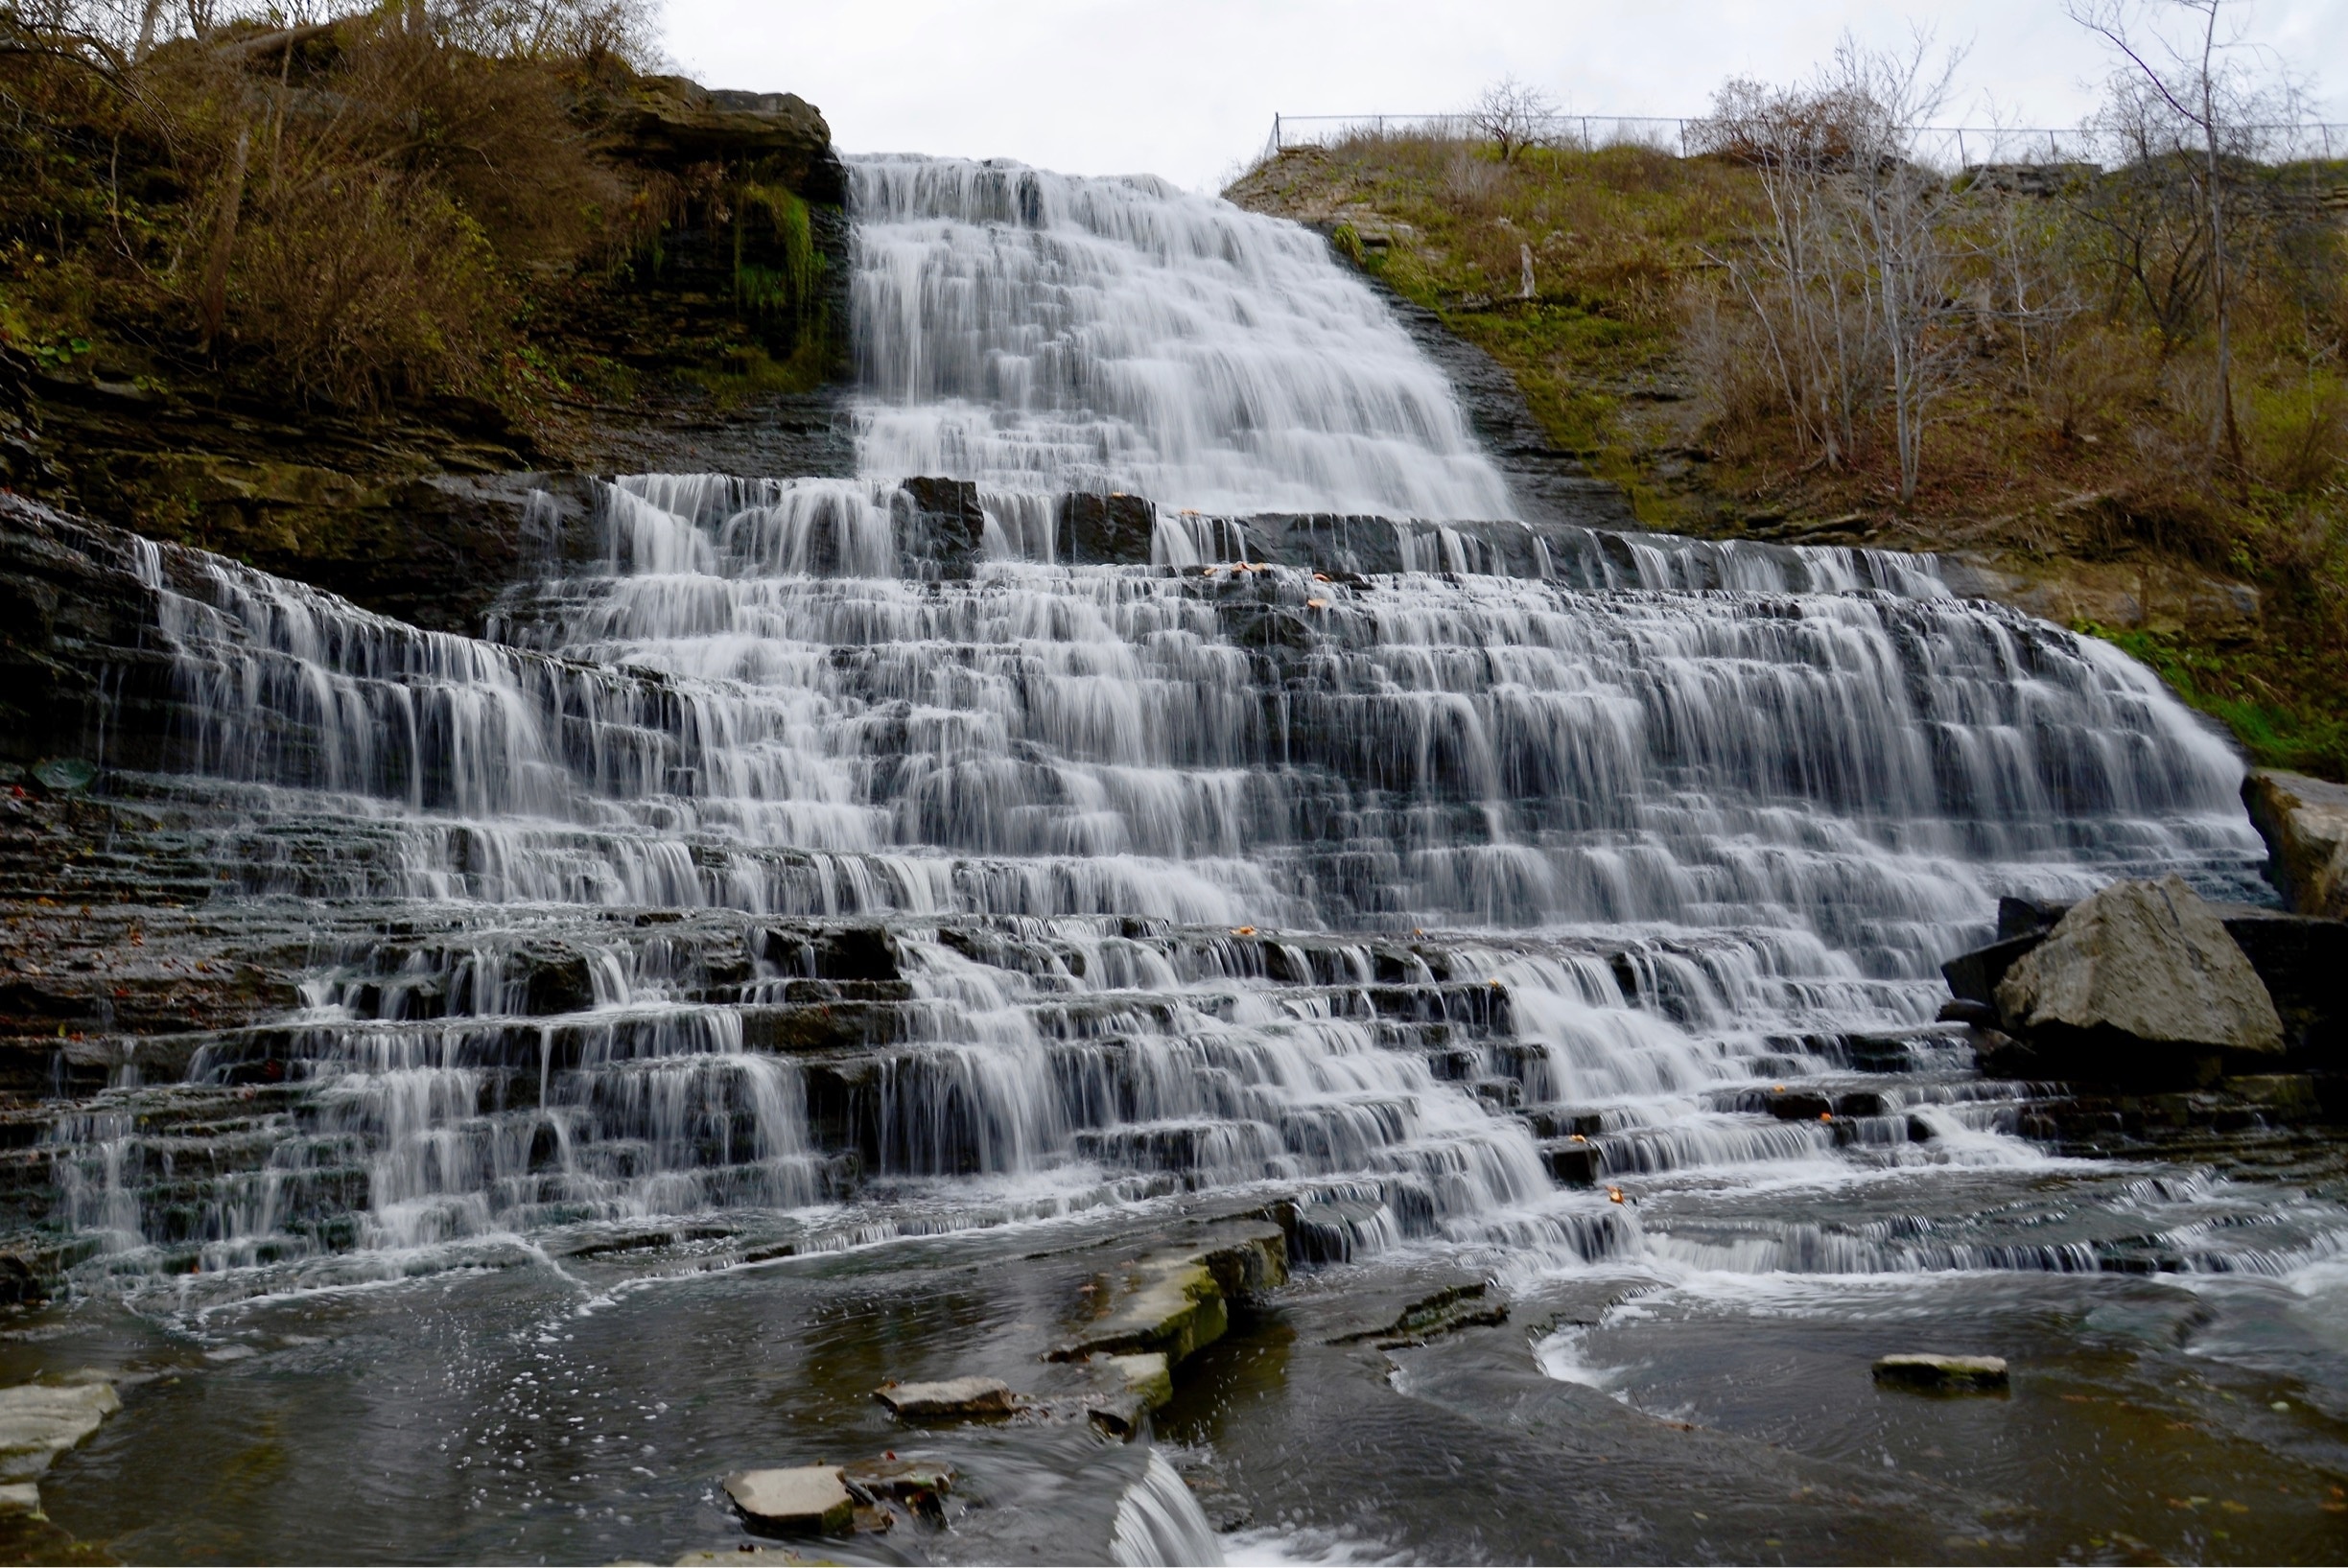 UNESCO World Biosphere Reserve: The Niagara Escarpment
Albion Falls  - One of the 70+ waterfalls in the city of waterfalls

#TakeAHike #waterfall #Canada #Ontario #Hamilton #NiagaraEscarpment #BruceTrail #UNESCOWorldBiosphereReserve #LikeALocal #NorthAmerica #AlbionFalls #AdventurePacked #GreatOutdoors